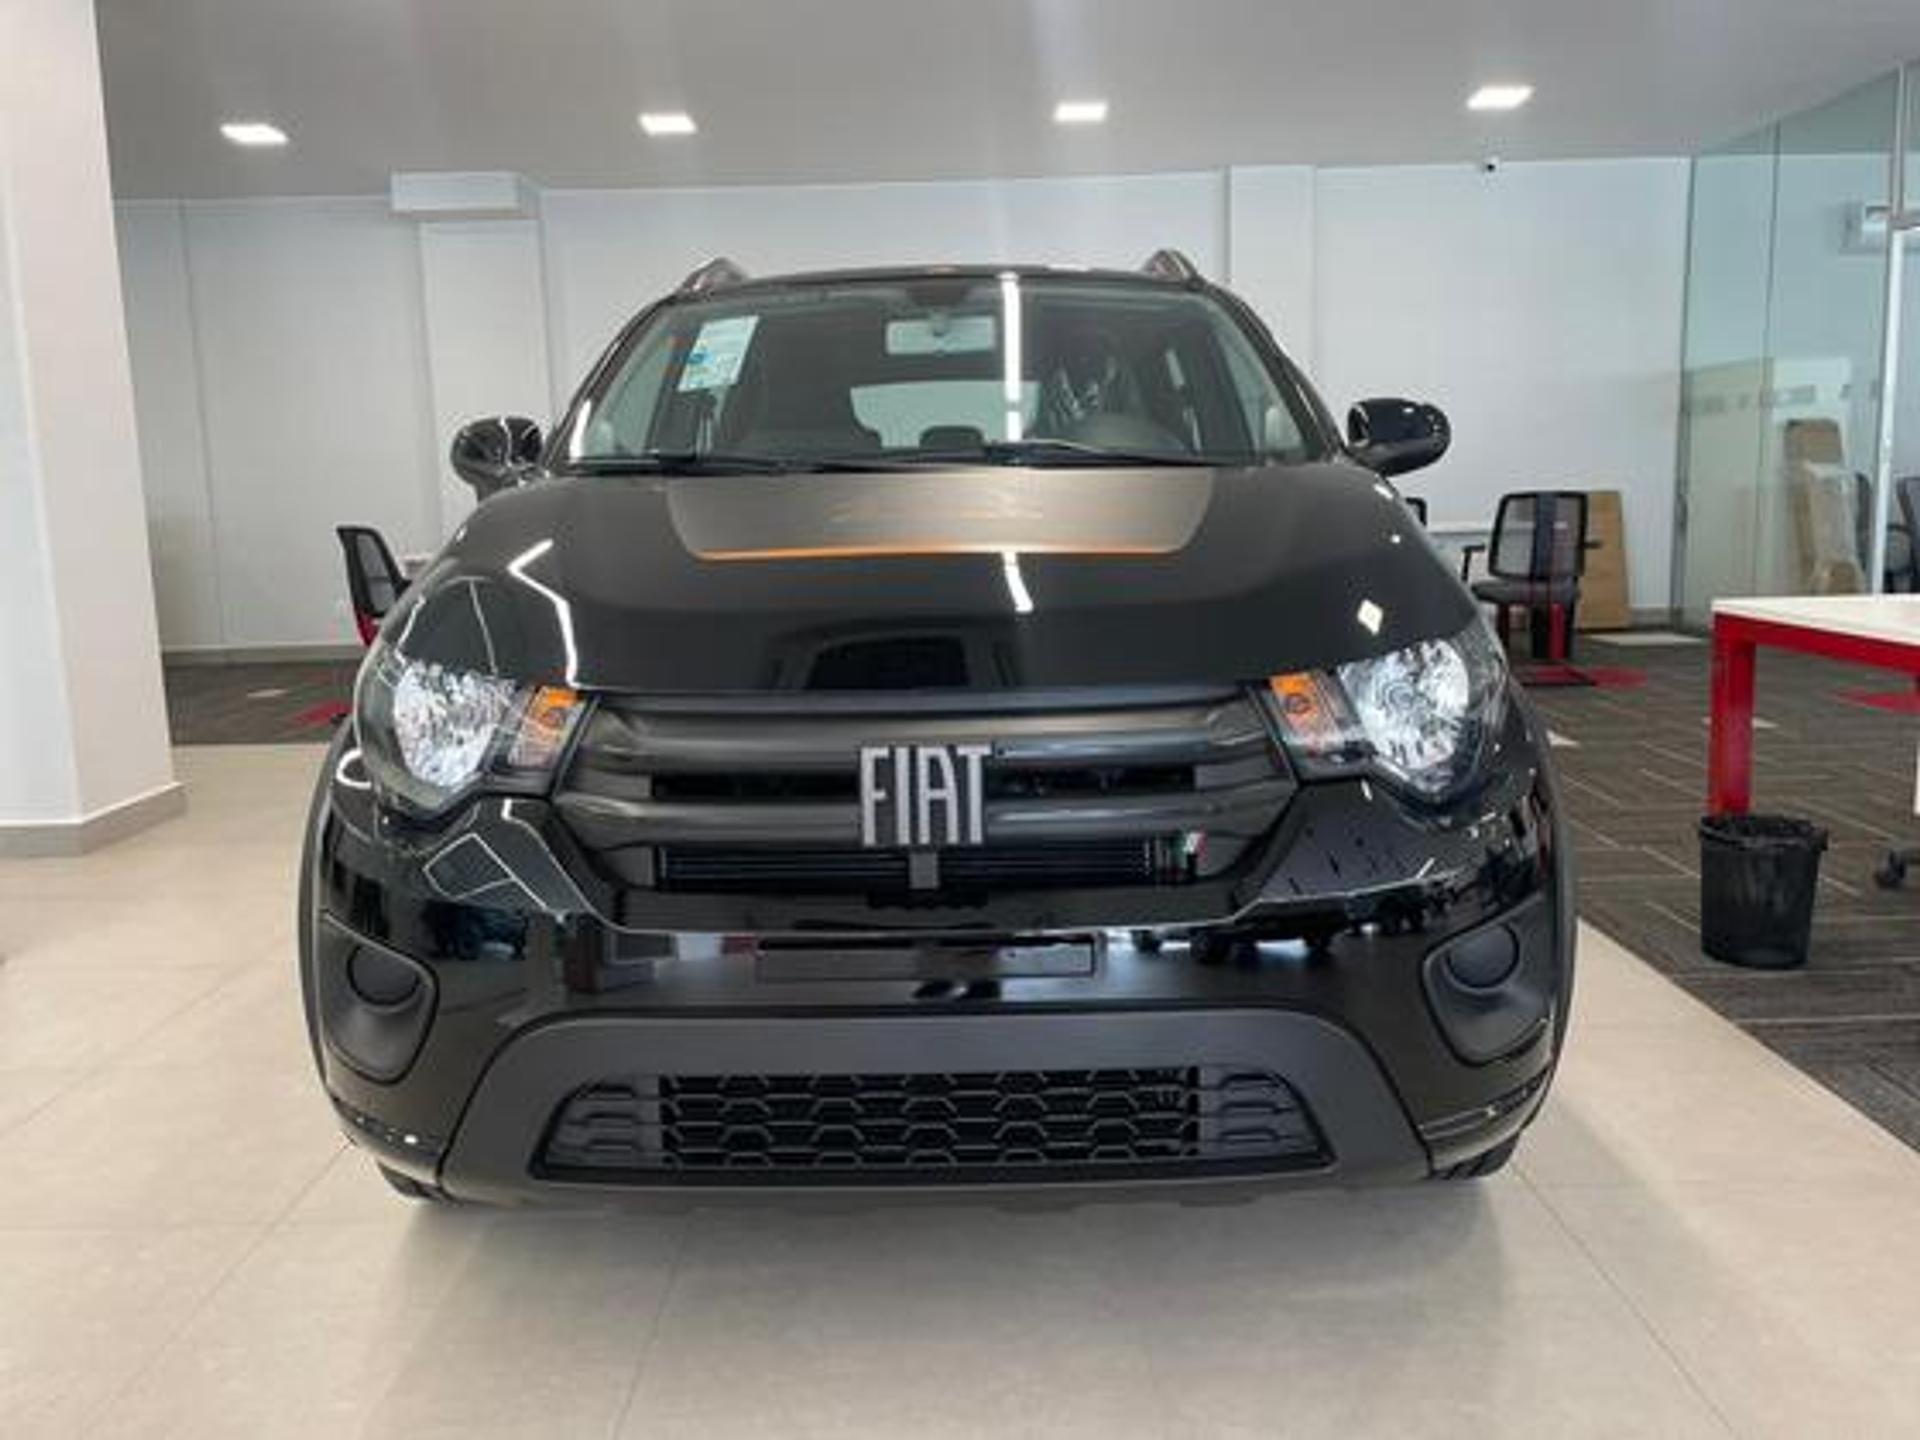 Fiat Mobi alcançou um crescimento de 16,4% nas vendas em abril